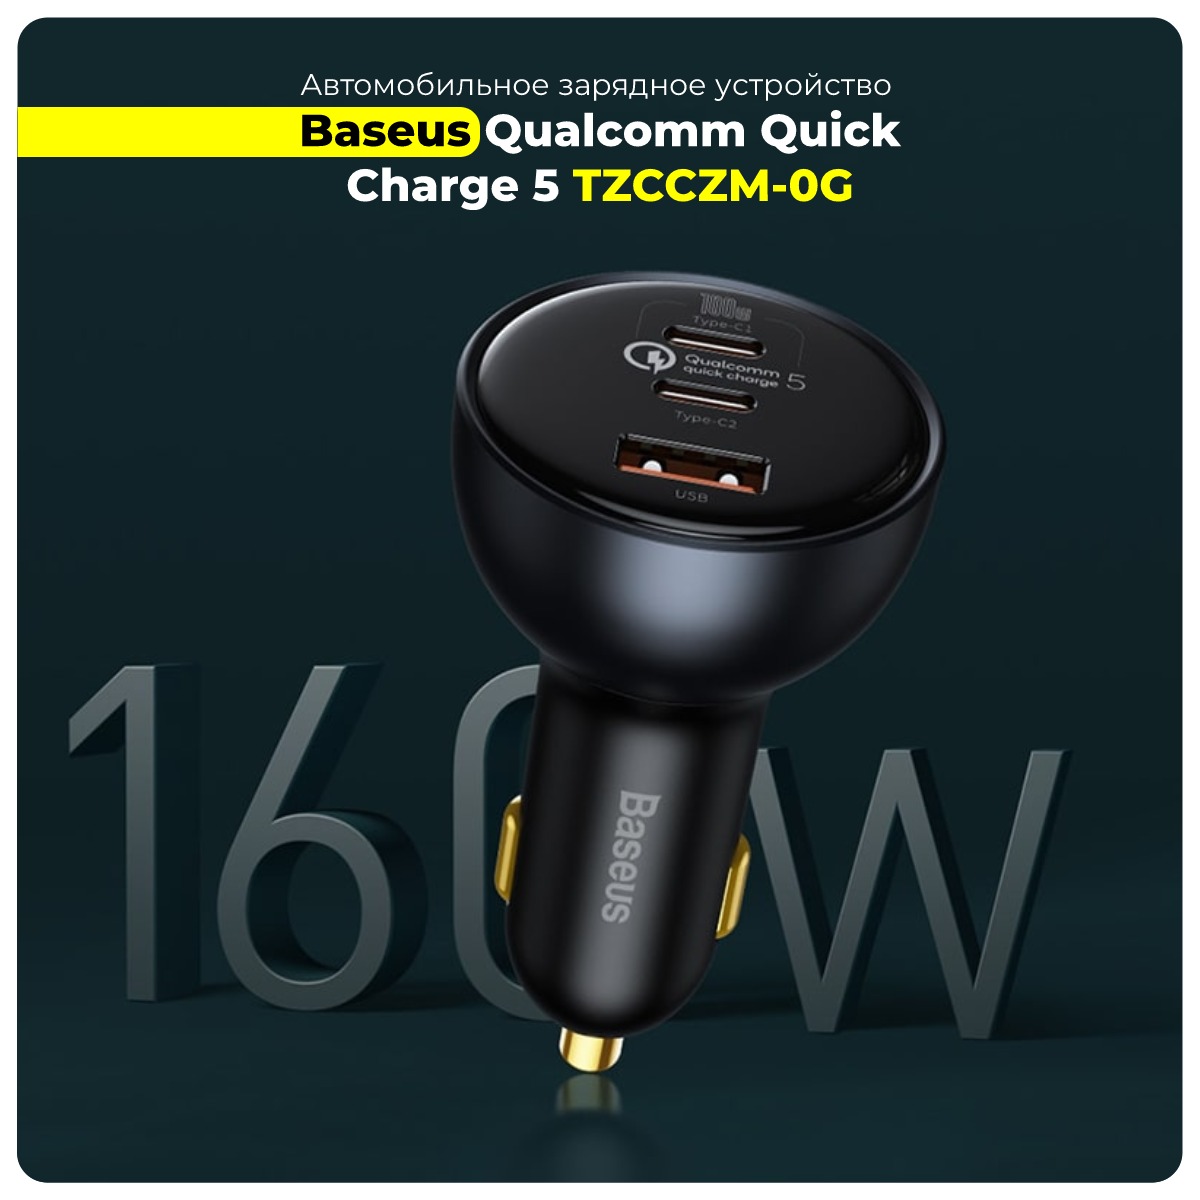 Baseus-Qualcomm-Quick-Charge-5-TZCCZM-0G-01